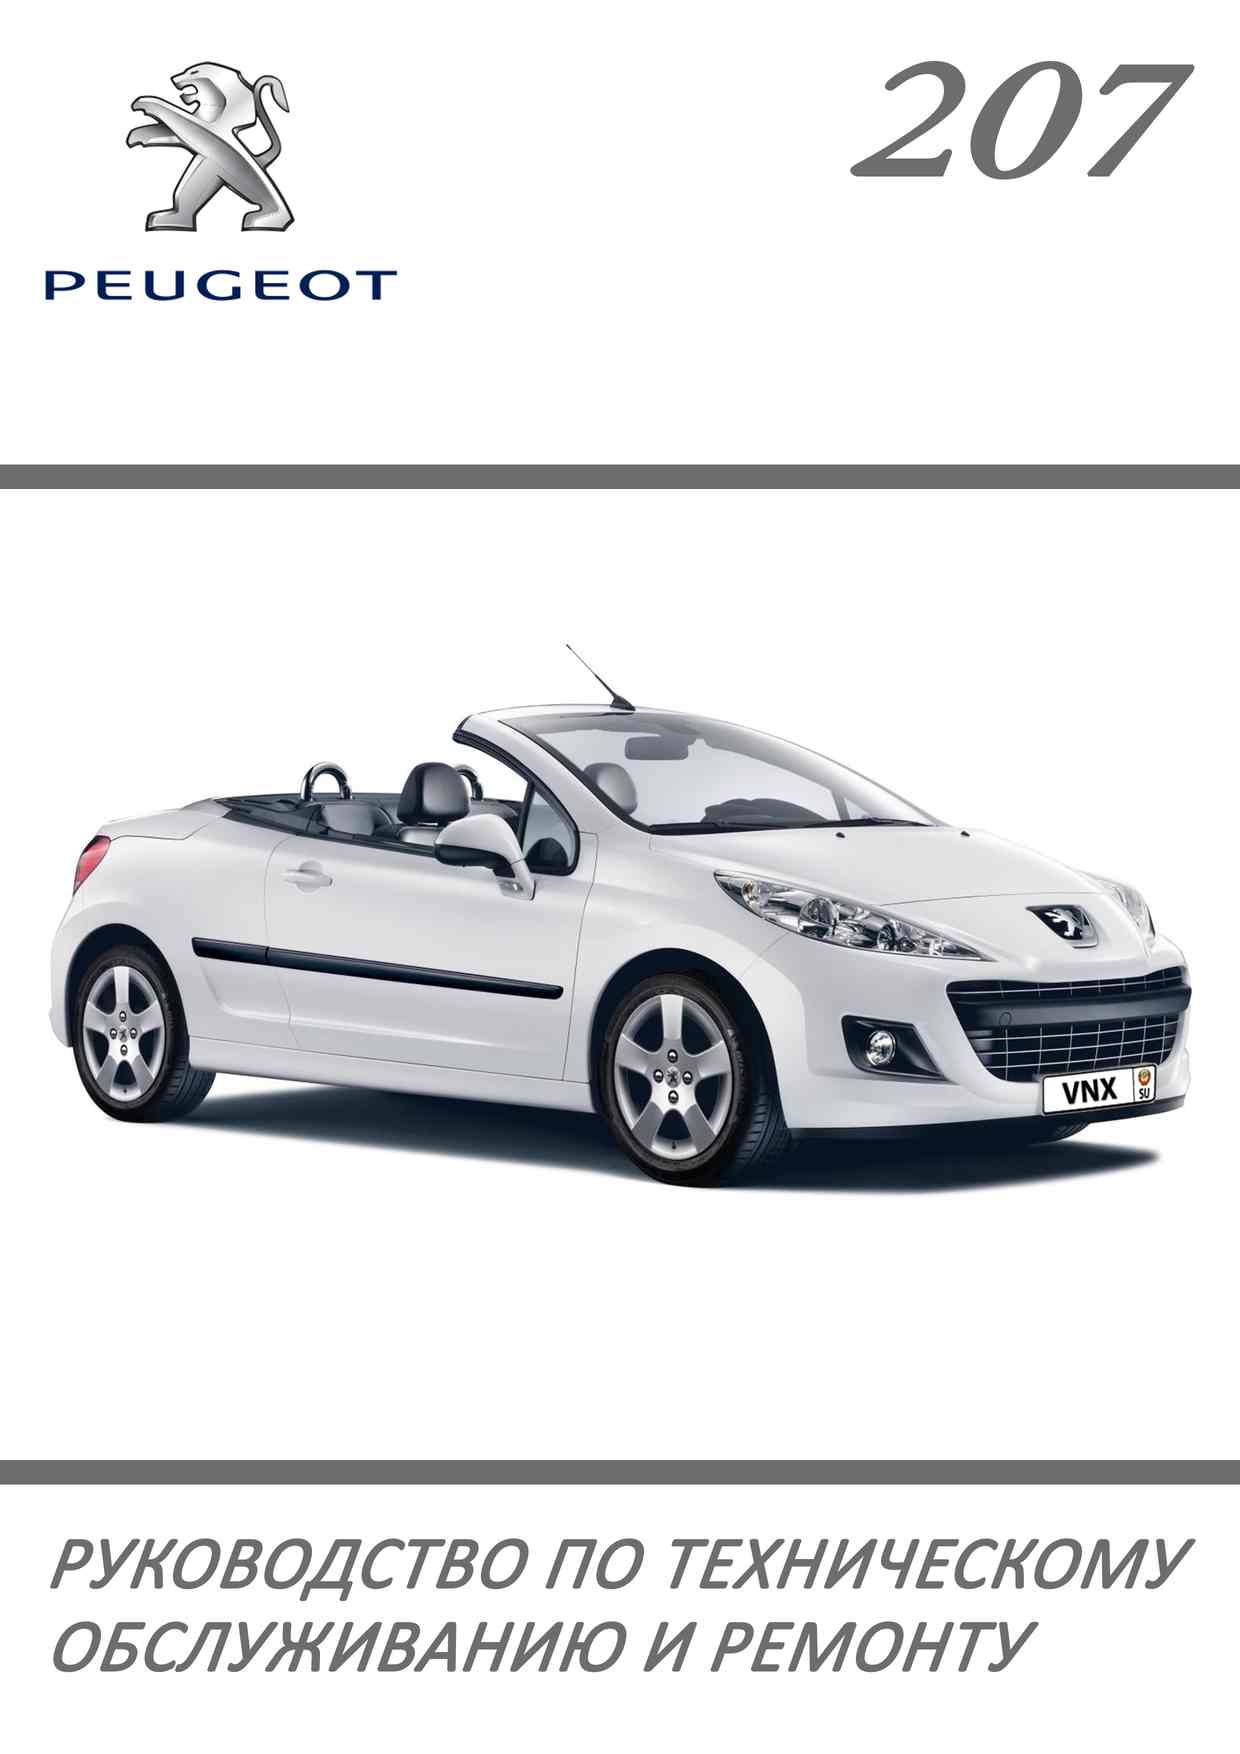 Peugeot 207 профессиональное руководство по ремонту обложка